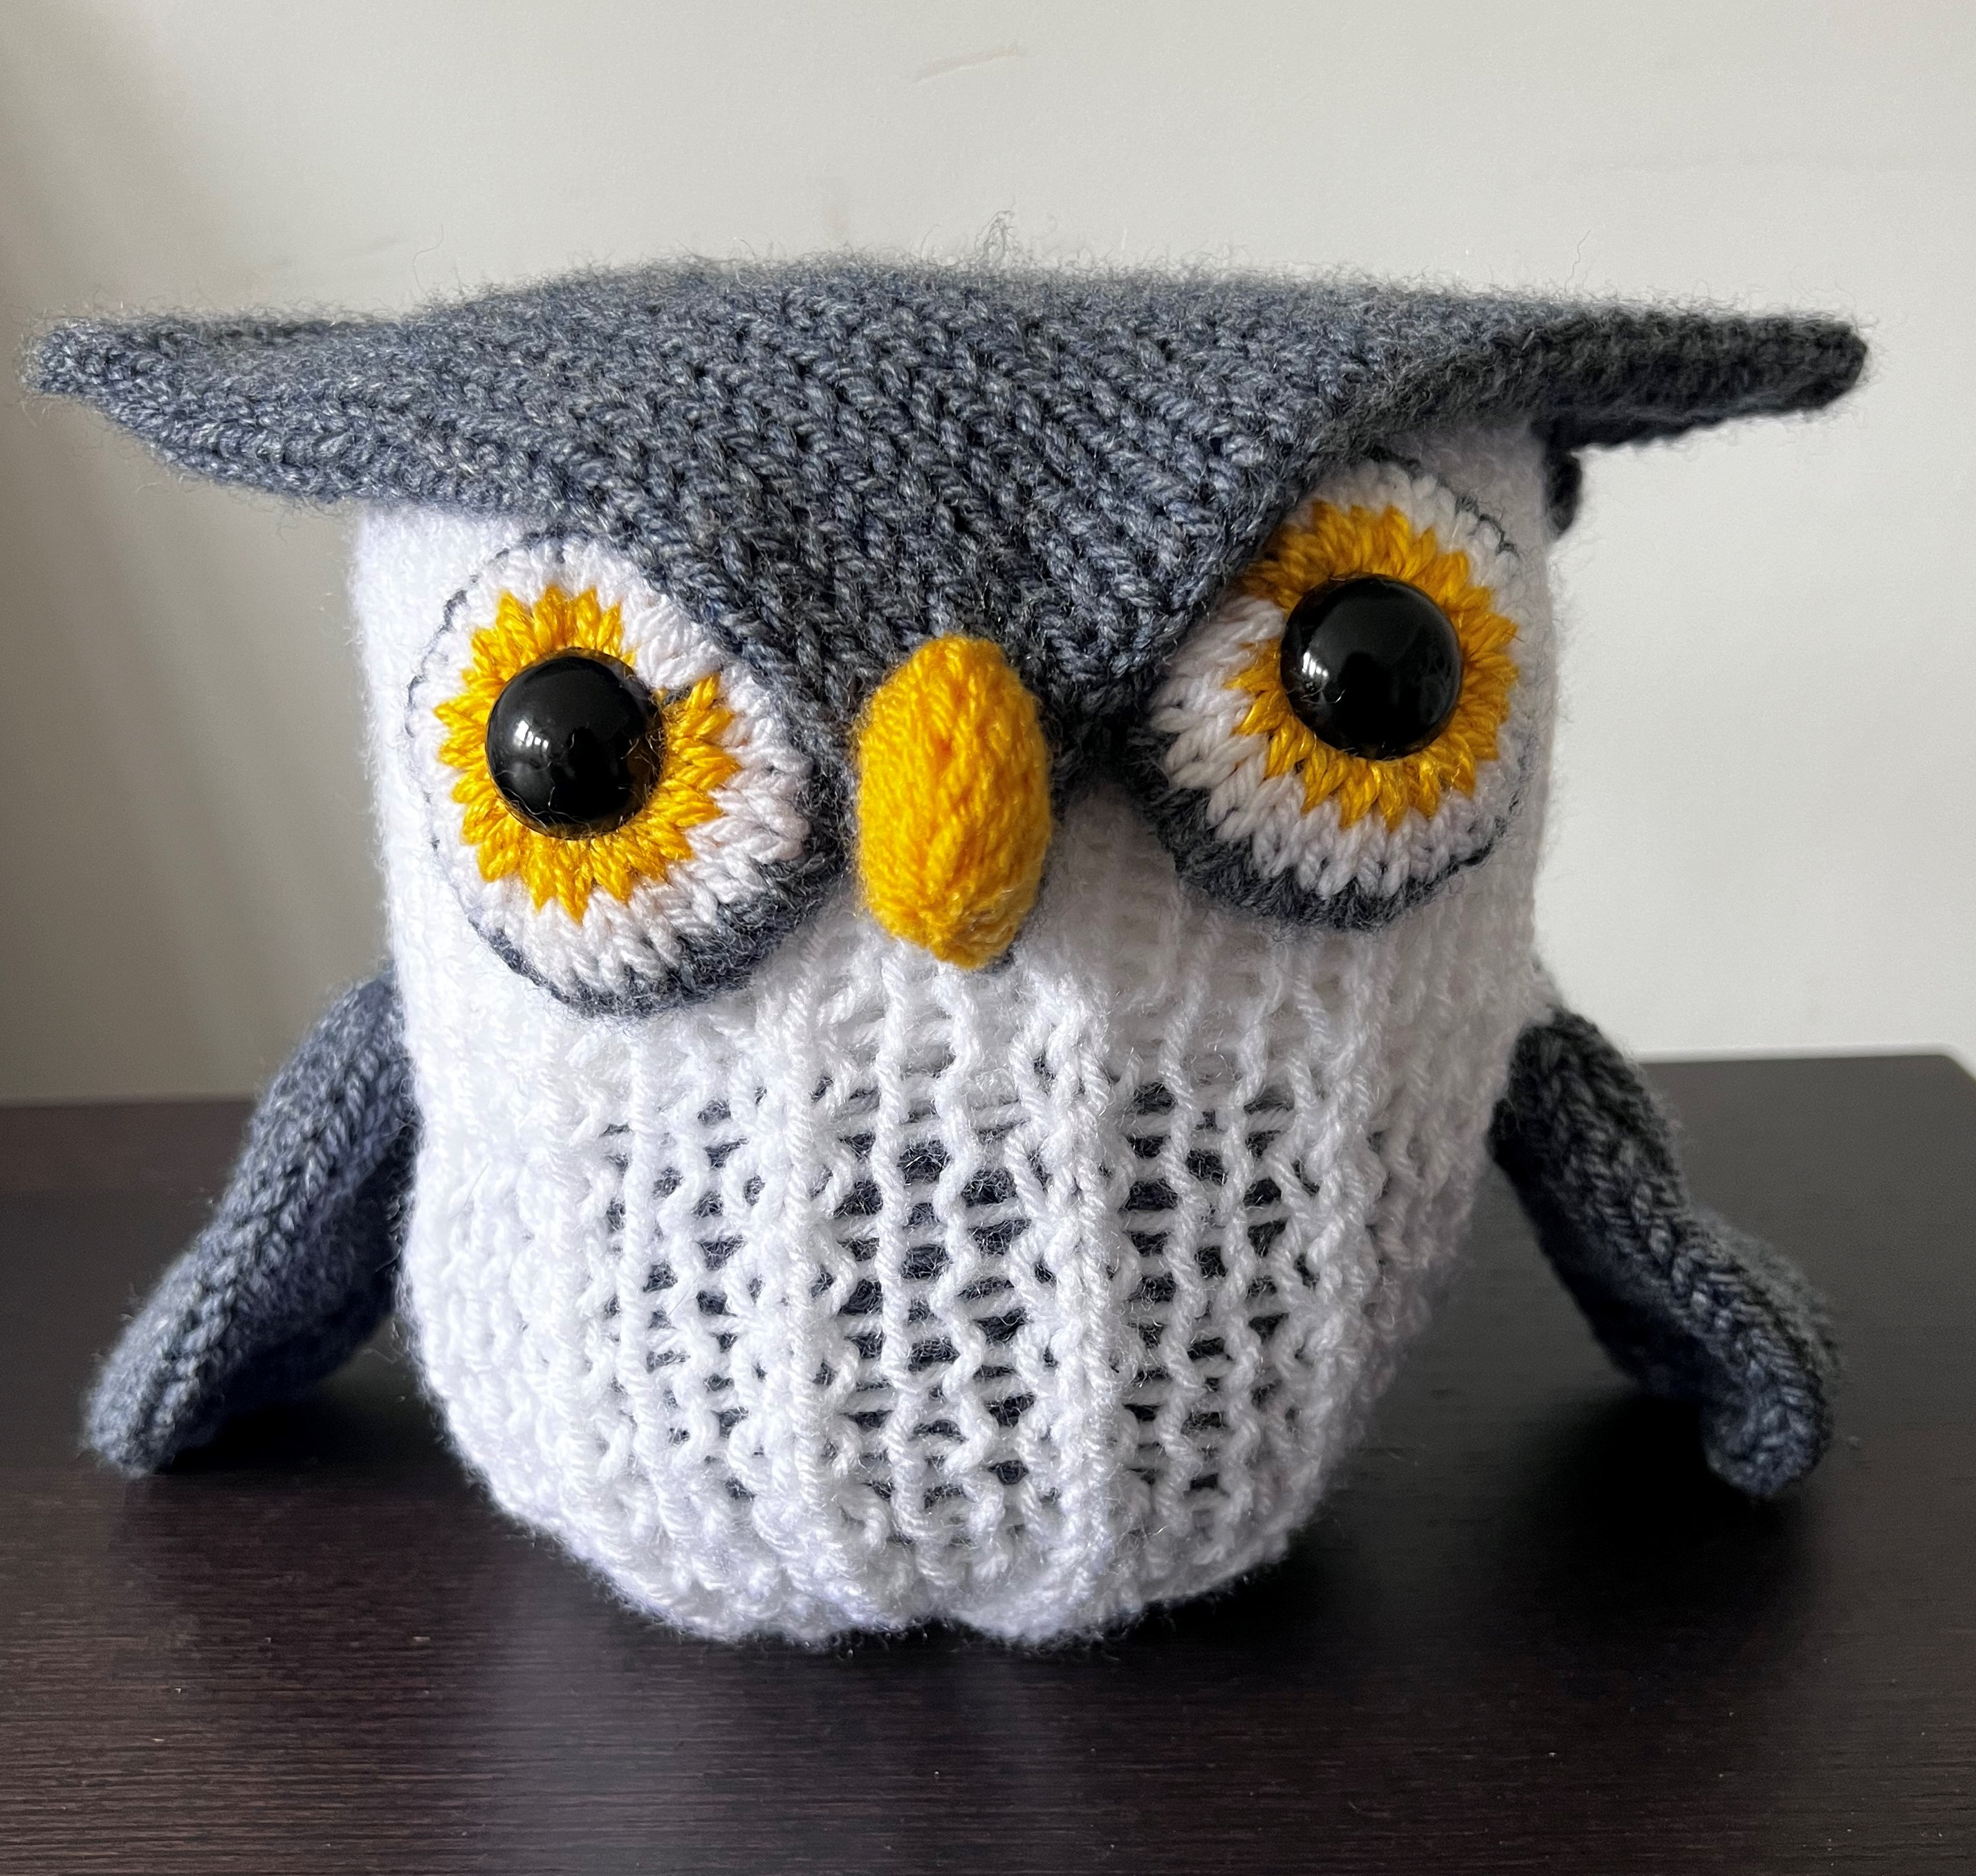 Baby Penguin Circular Knitting Machine Pdf Pattern Sentro Addi Express 